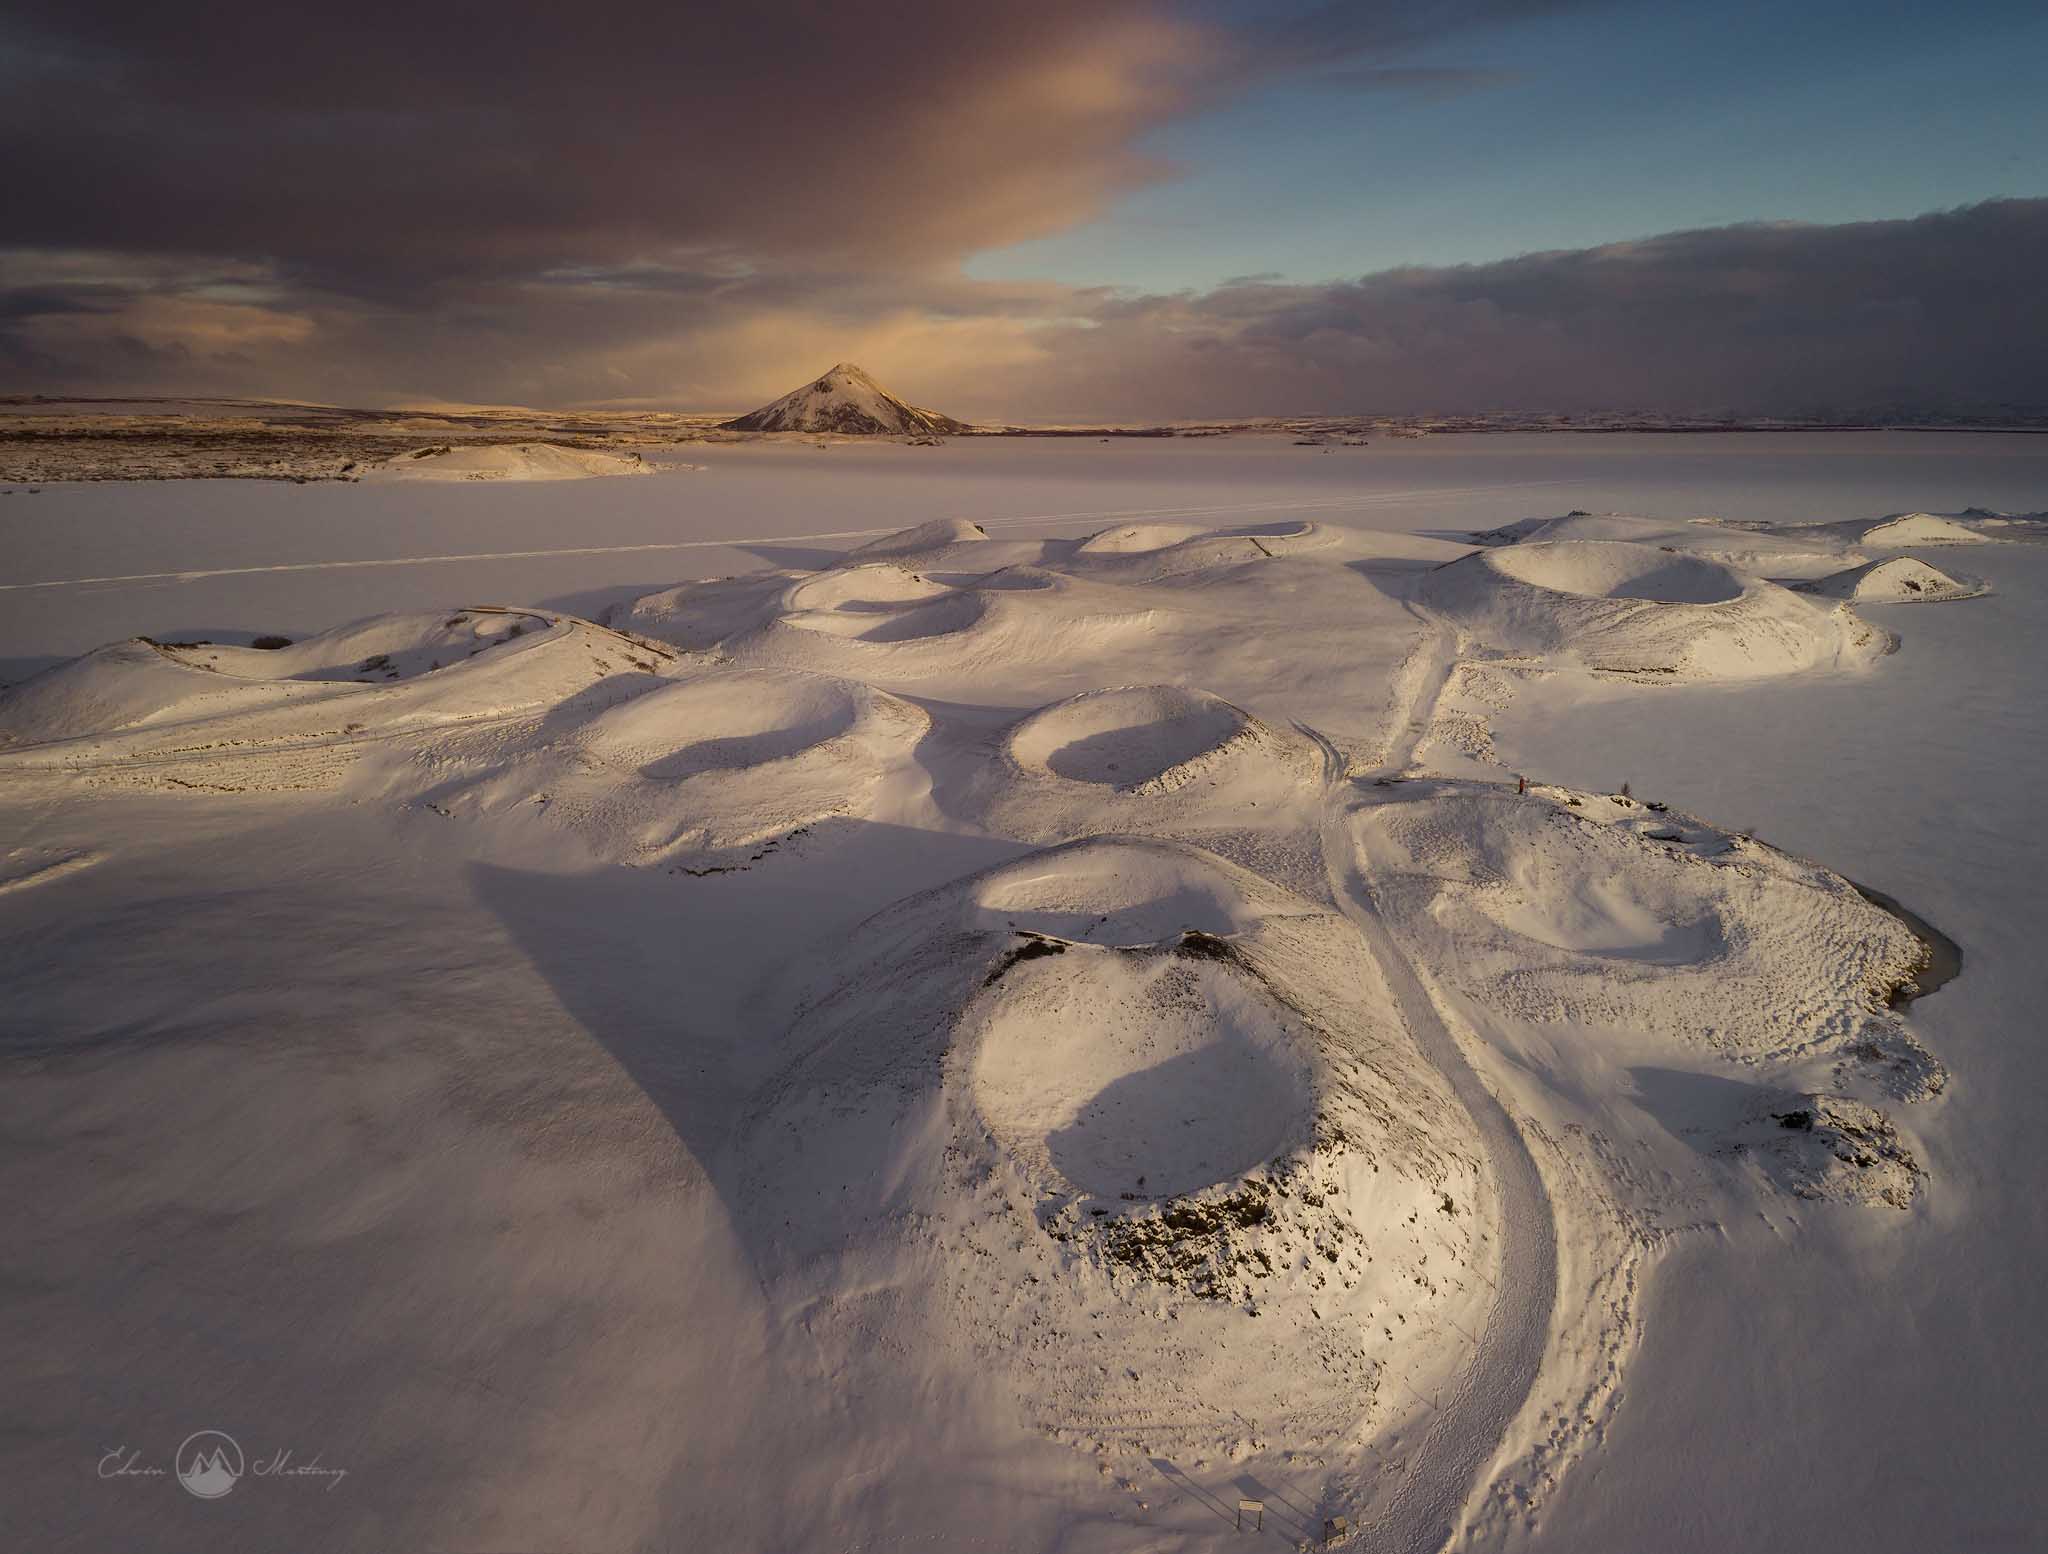 冬のアイスランド周遊8日間 | 氷の洞窟探検オプション付き